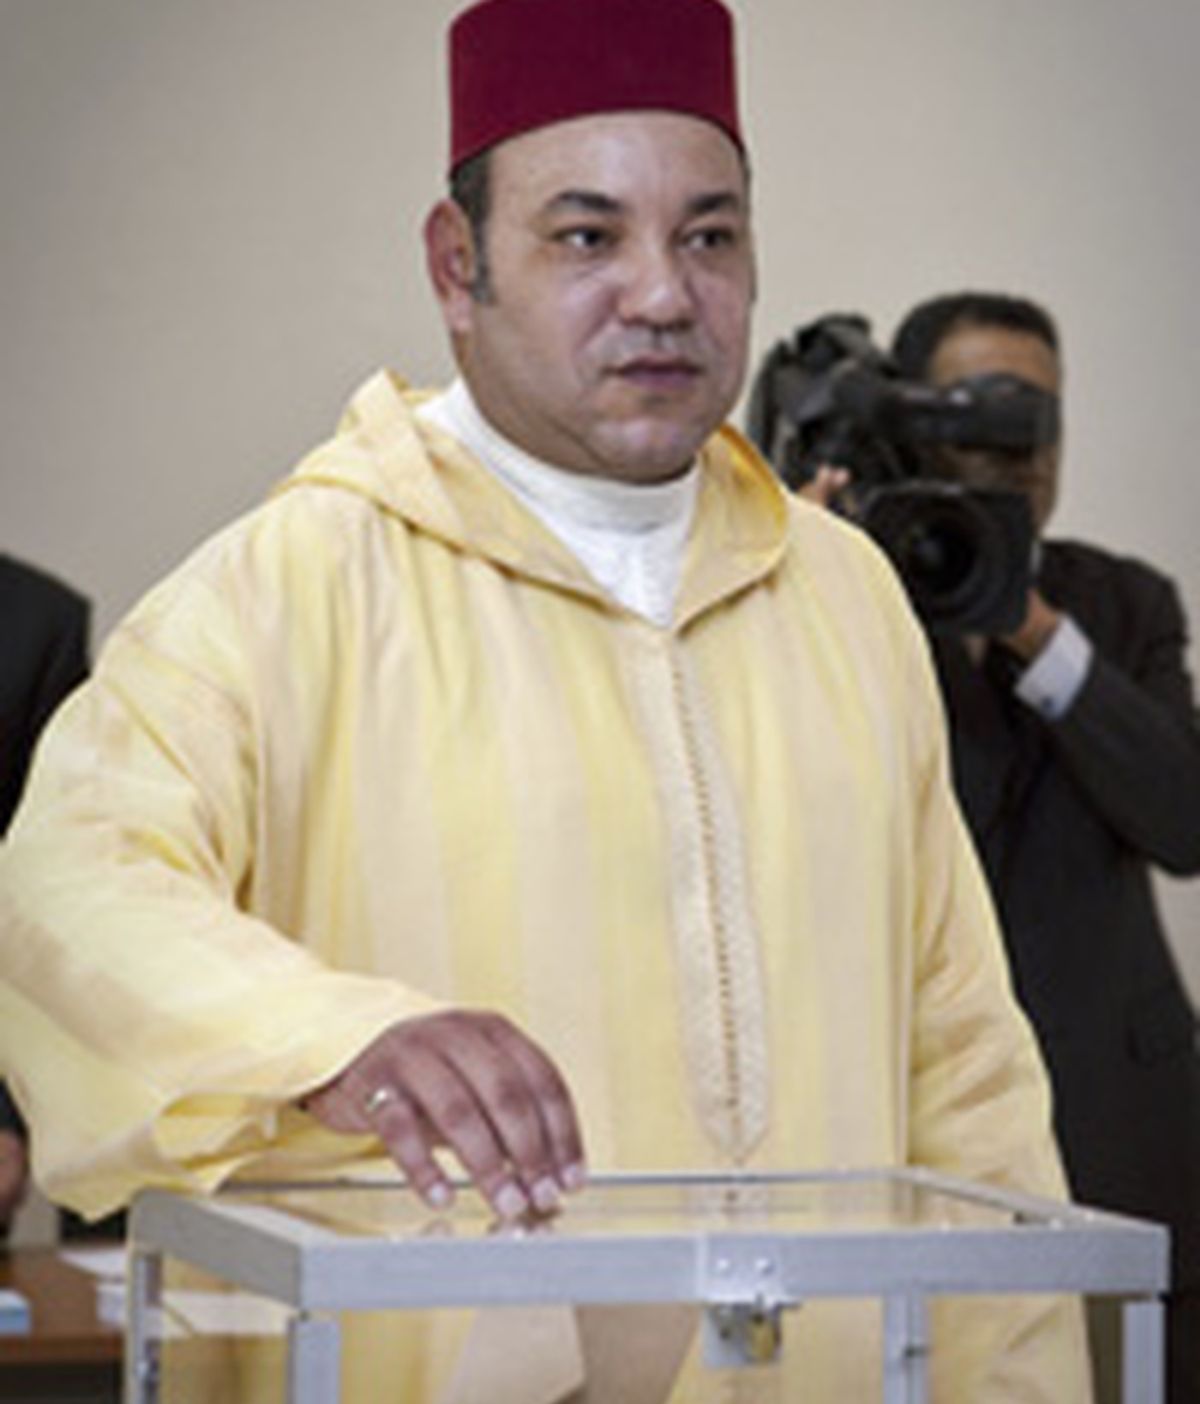 El Rey Mohamed VI de Marruecos dice si a la Constitución FOTO: EFE